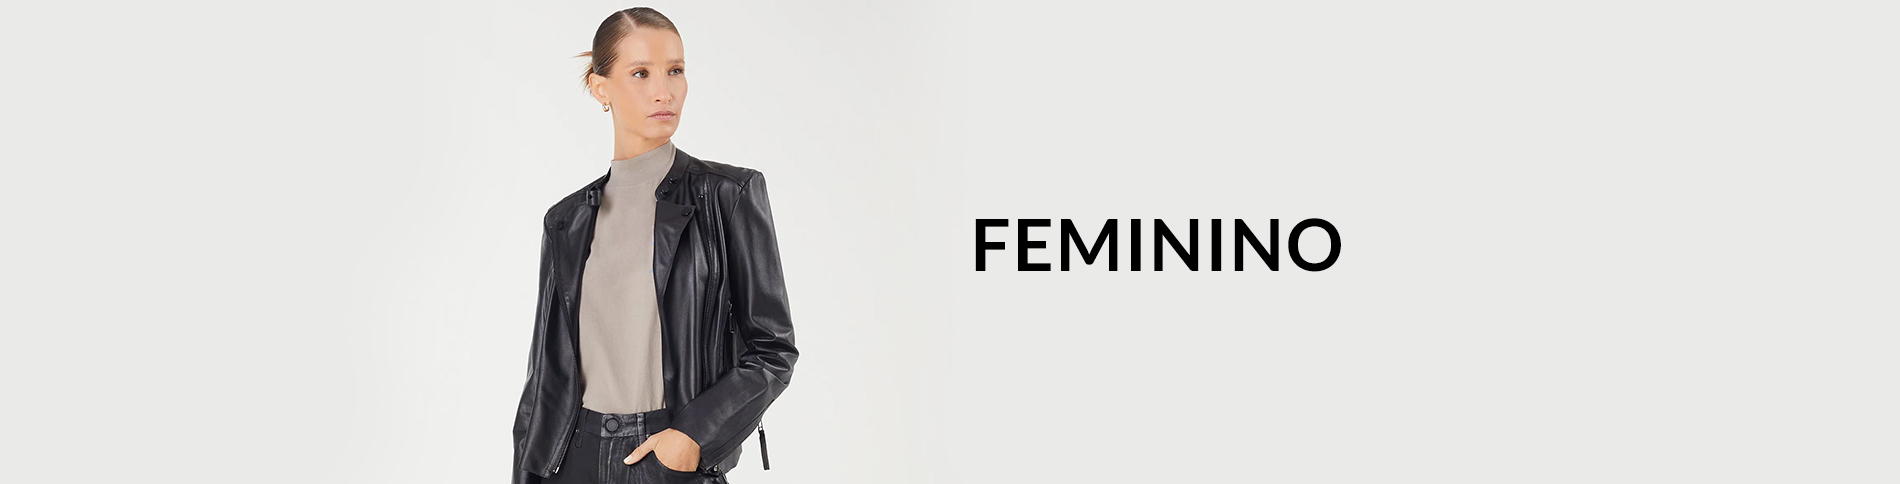 Banner - Feminino